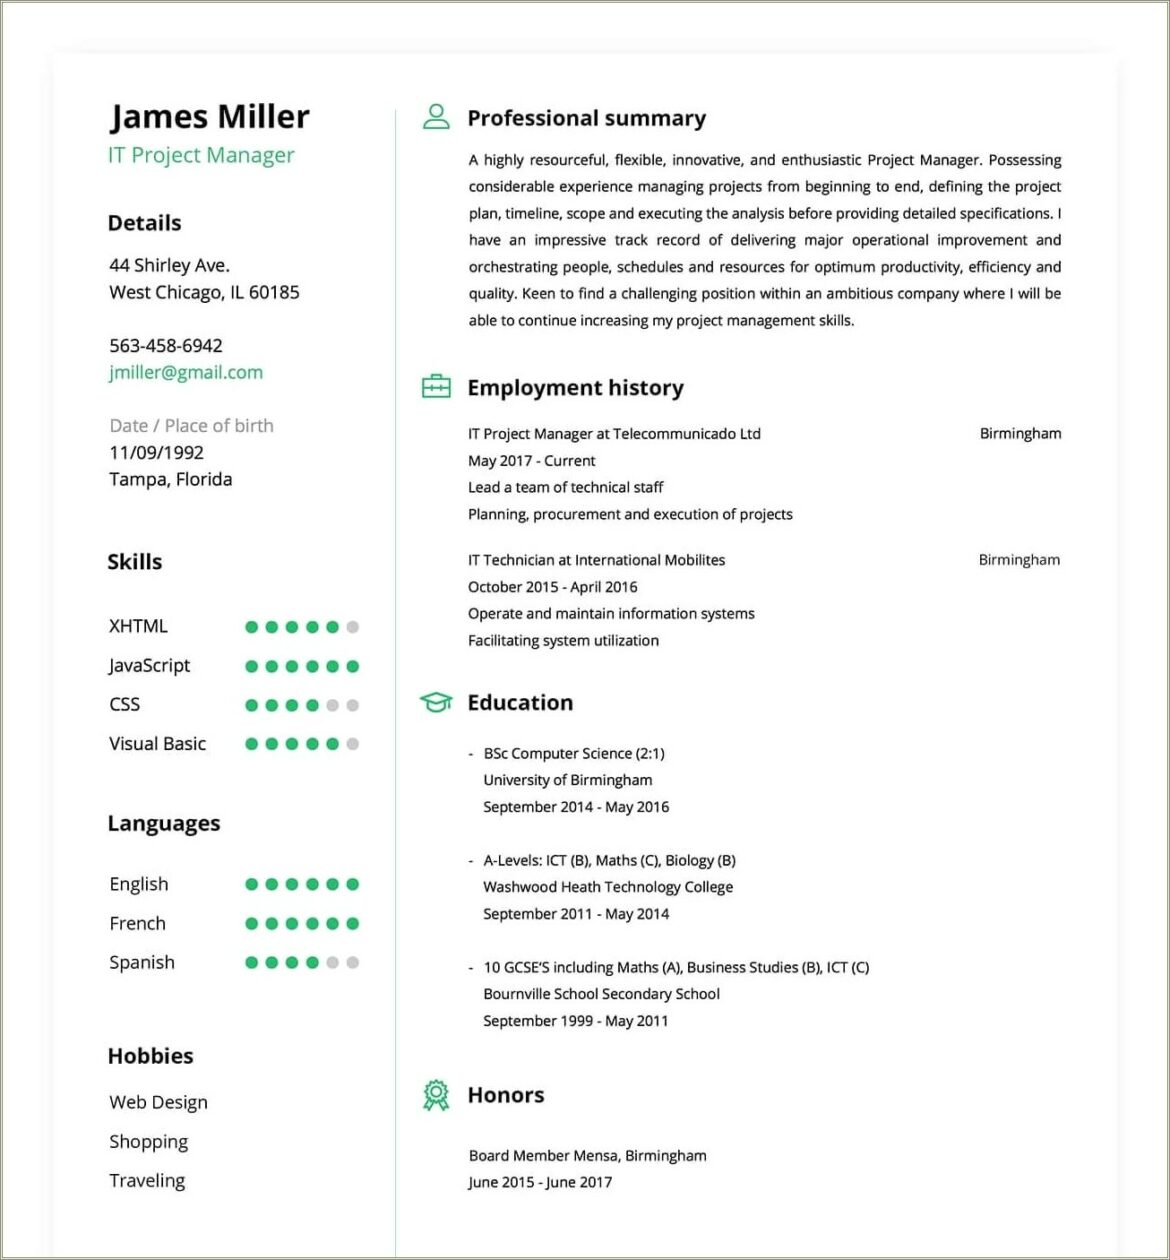 Sample Resume For Online Writing Job